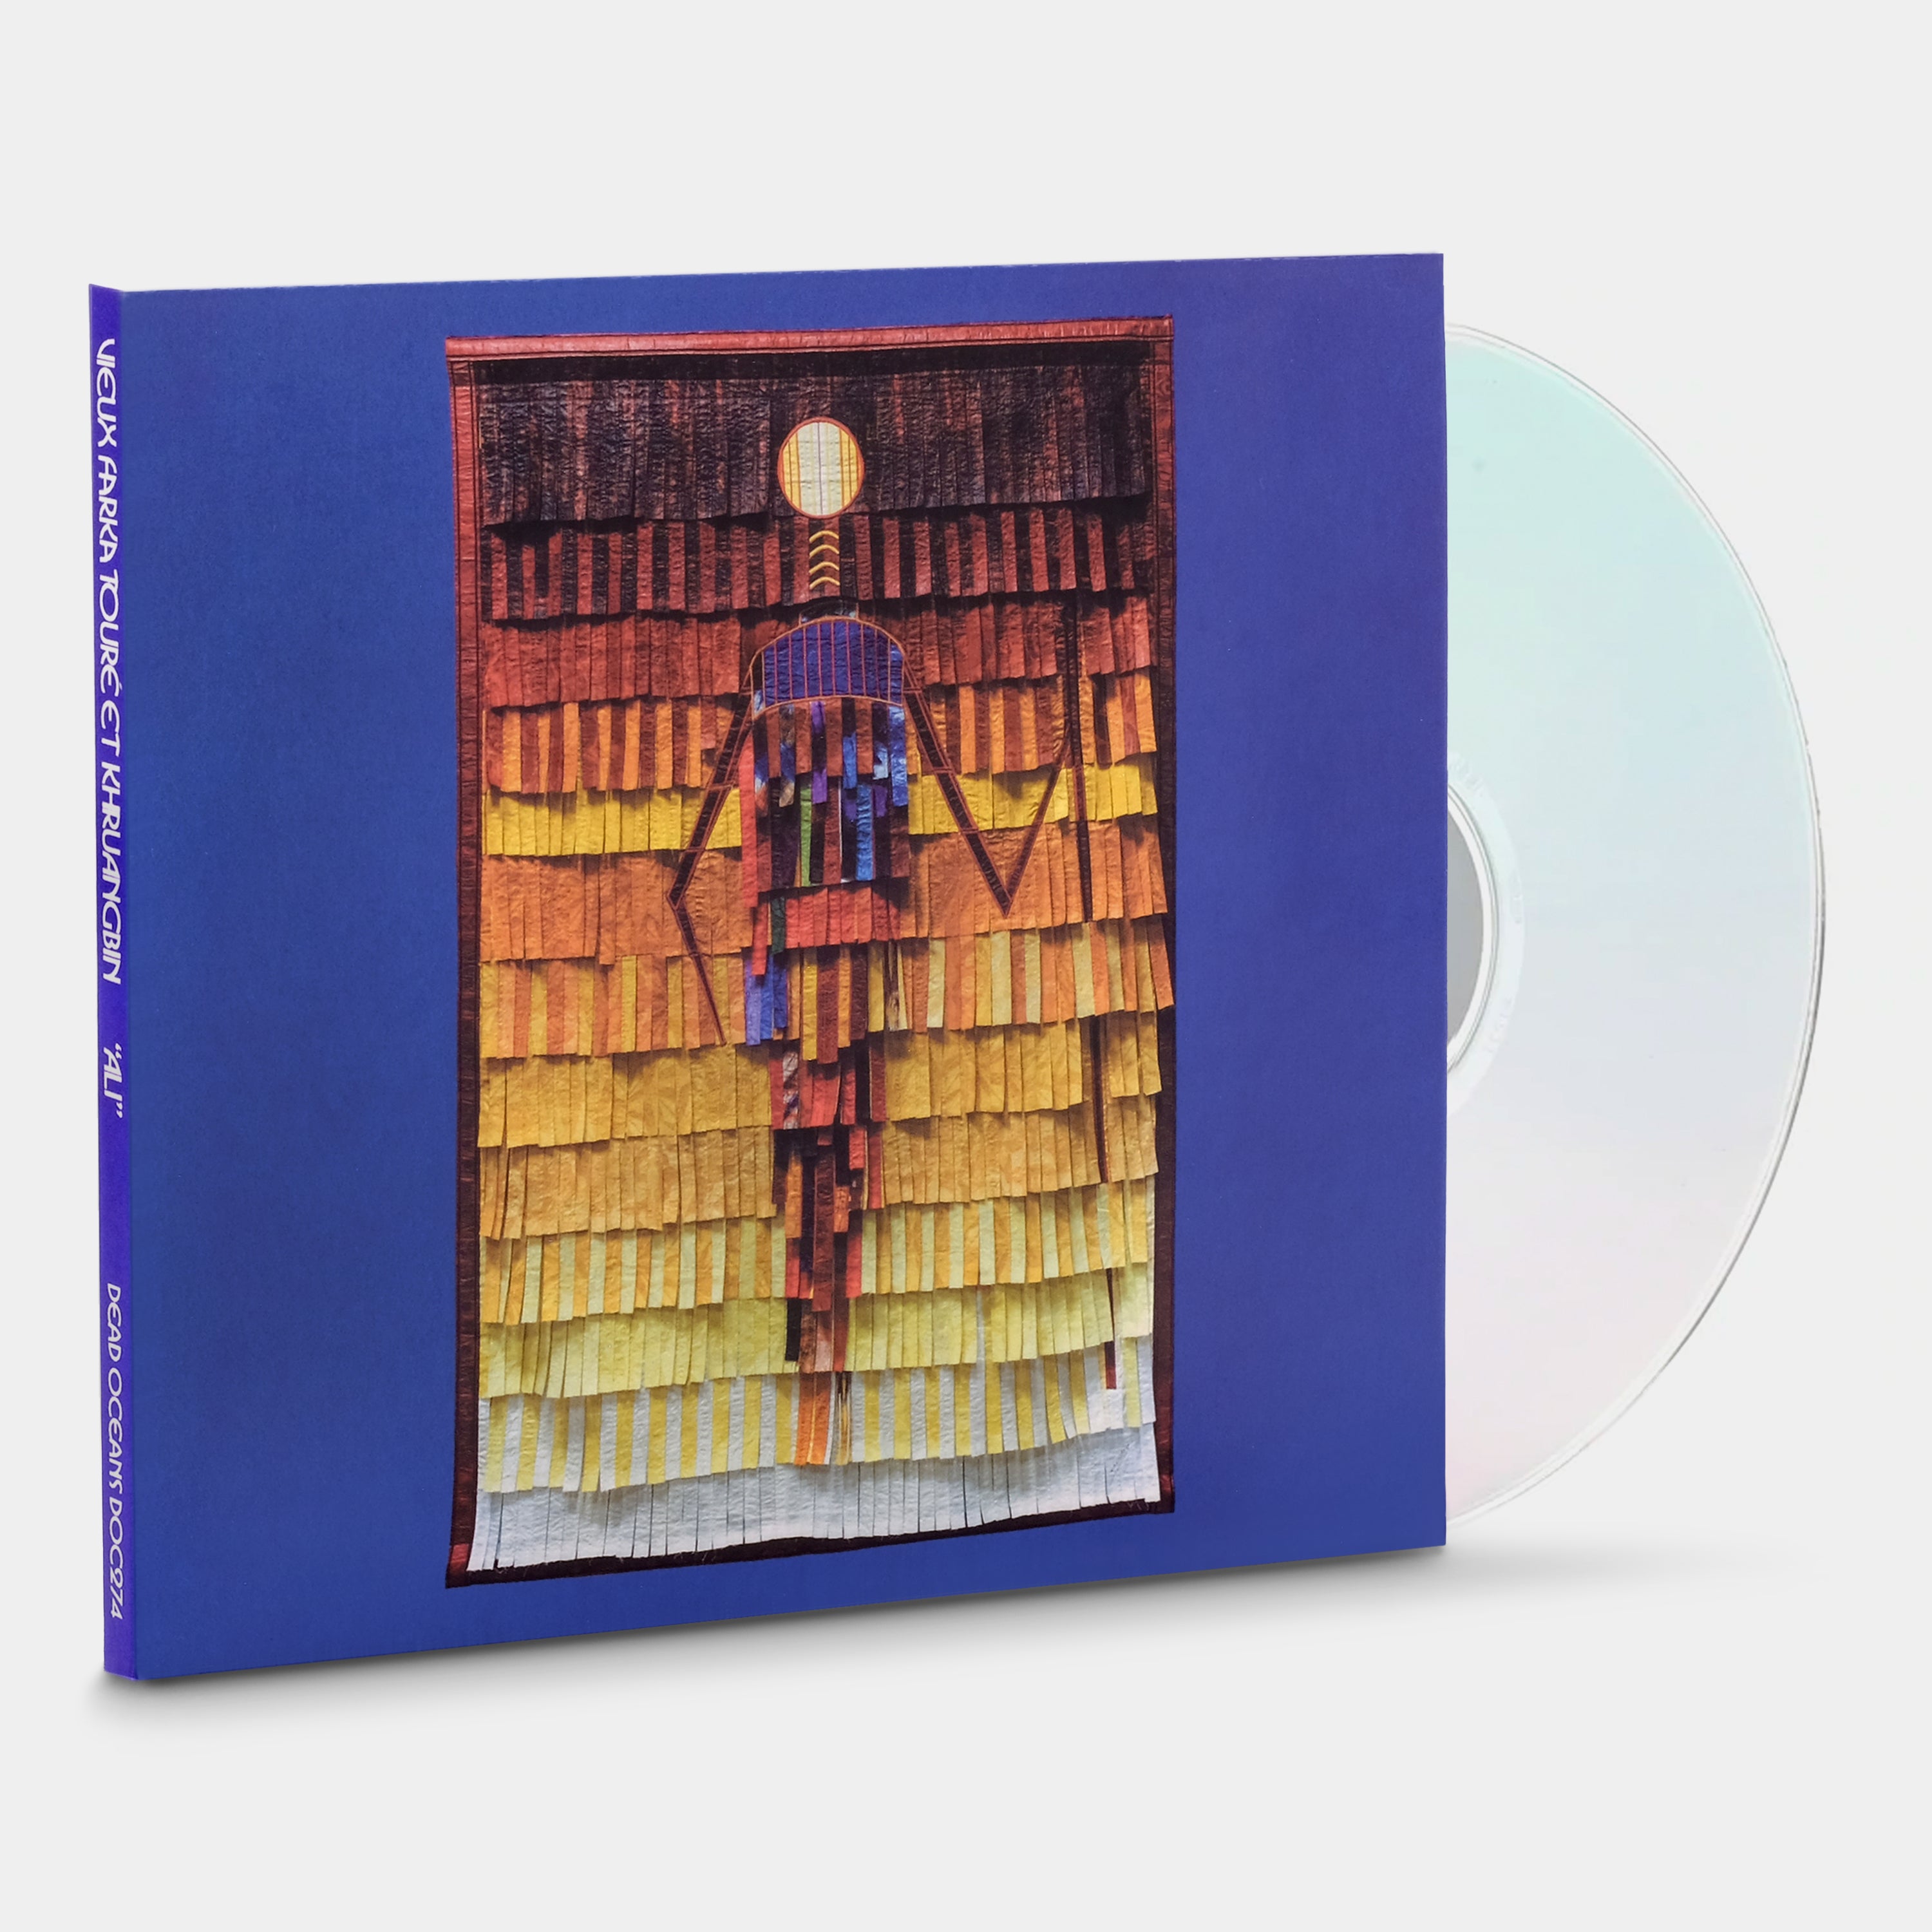 Vieux Farka Toure Et Khruangbin - "Ali" CD